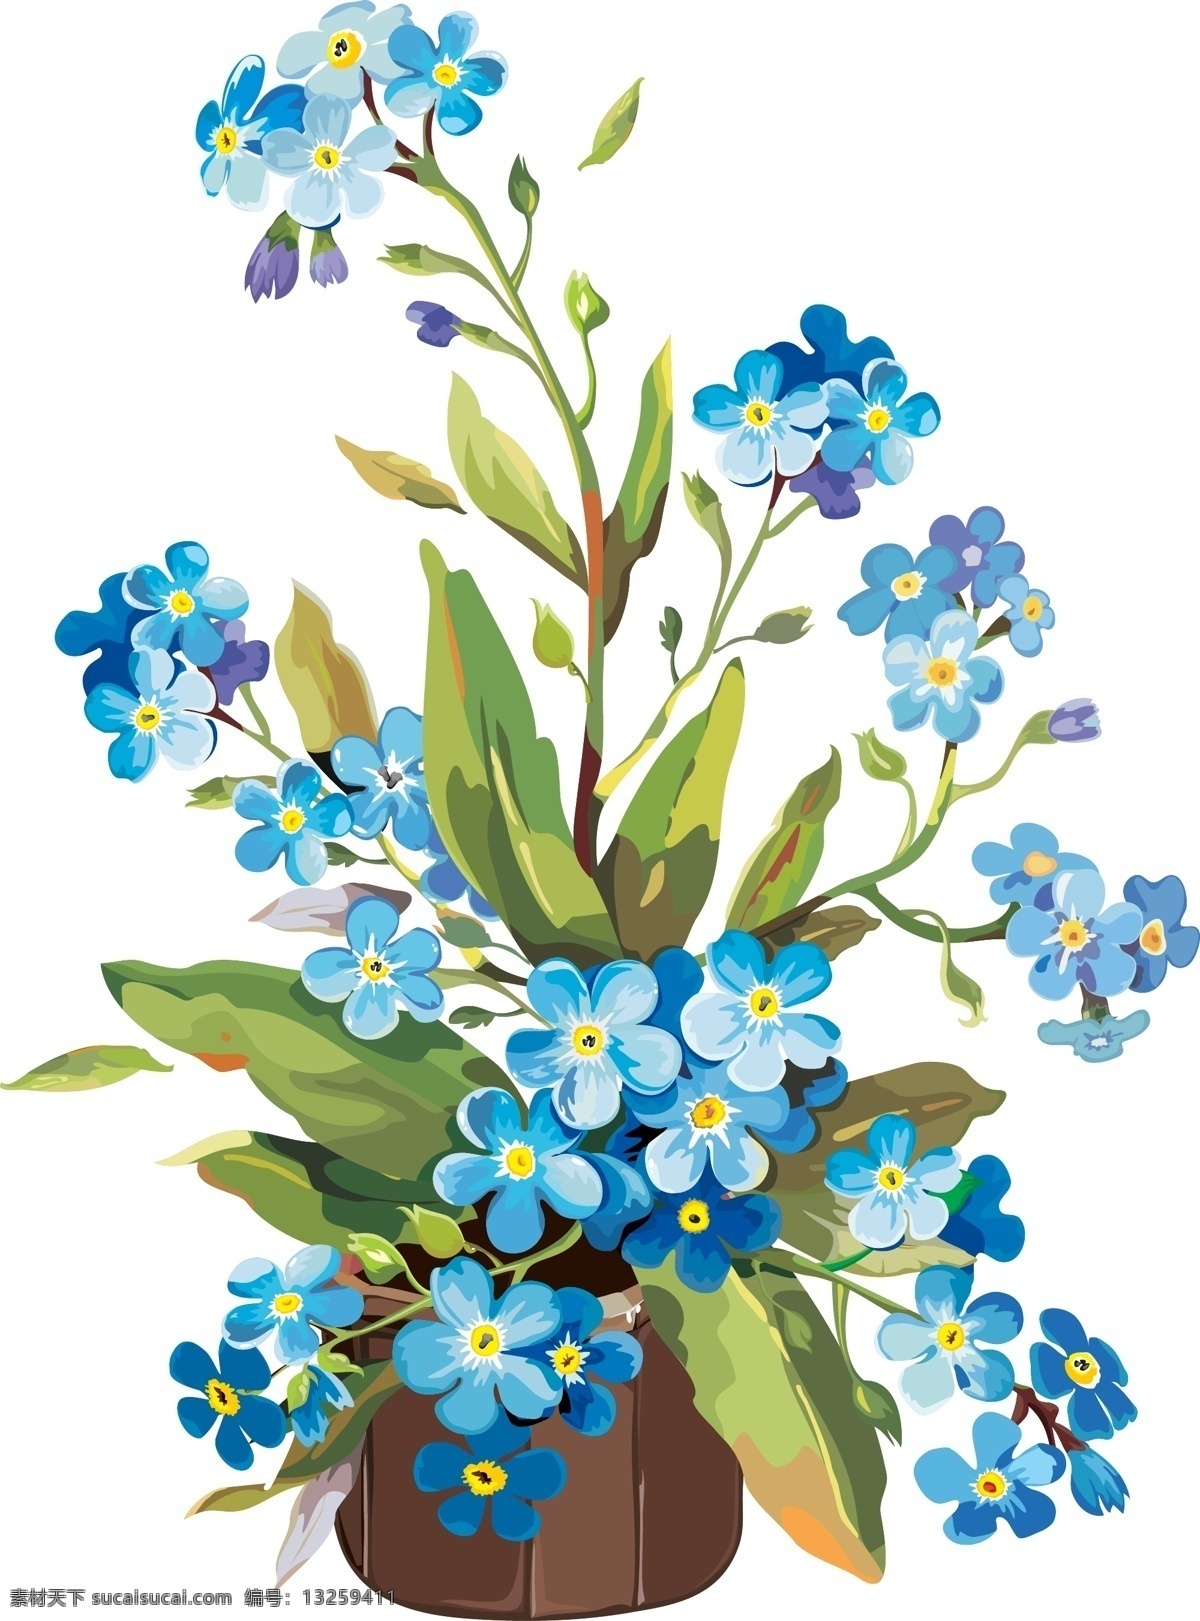 卡通 矢量 手绘 水彩 蓝色 花盆 商业 插画 元素 花 创意设计 排版 排版设计